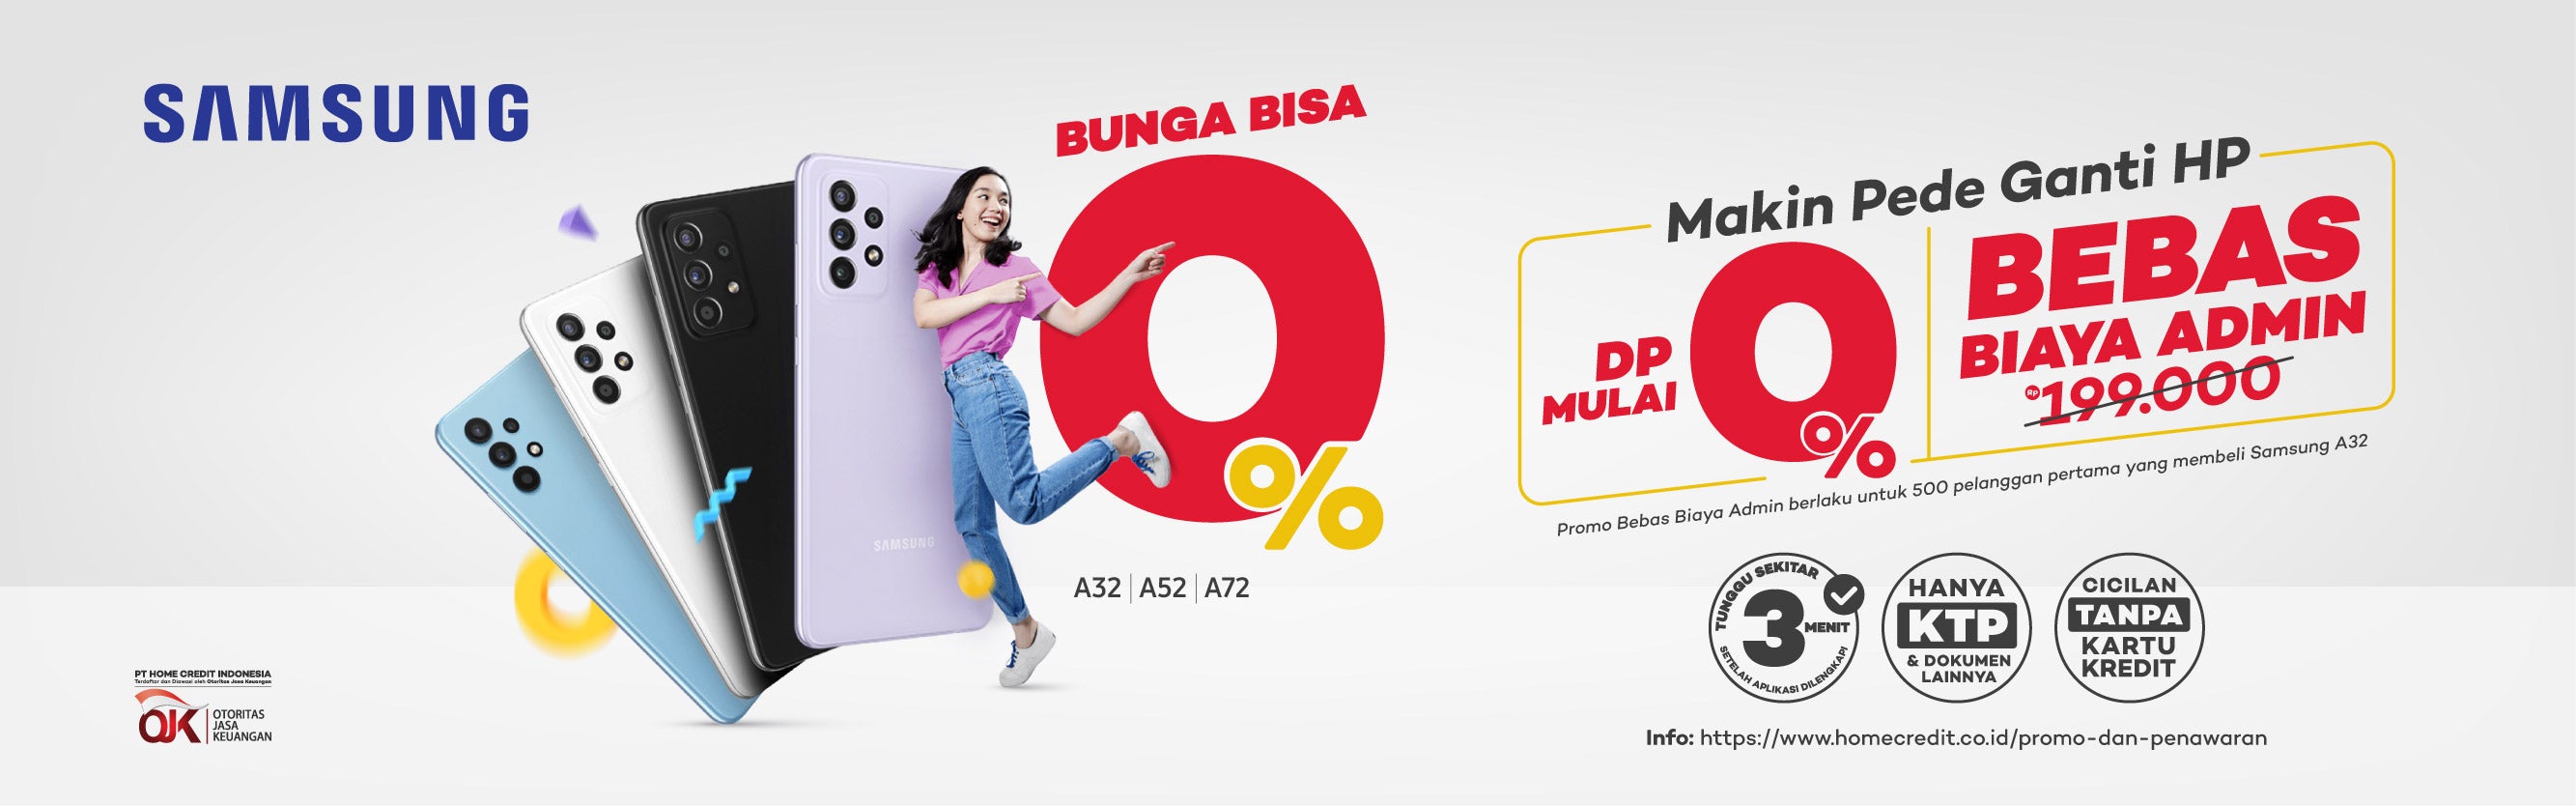 Promo Bunga Bisa 0% + DP Mulai 0% + Bebas Biaya Admin SAMSUNG - Home Credit